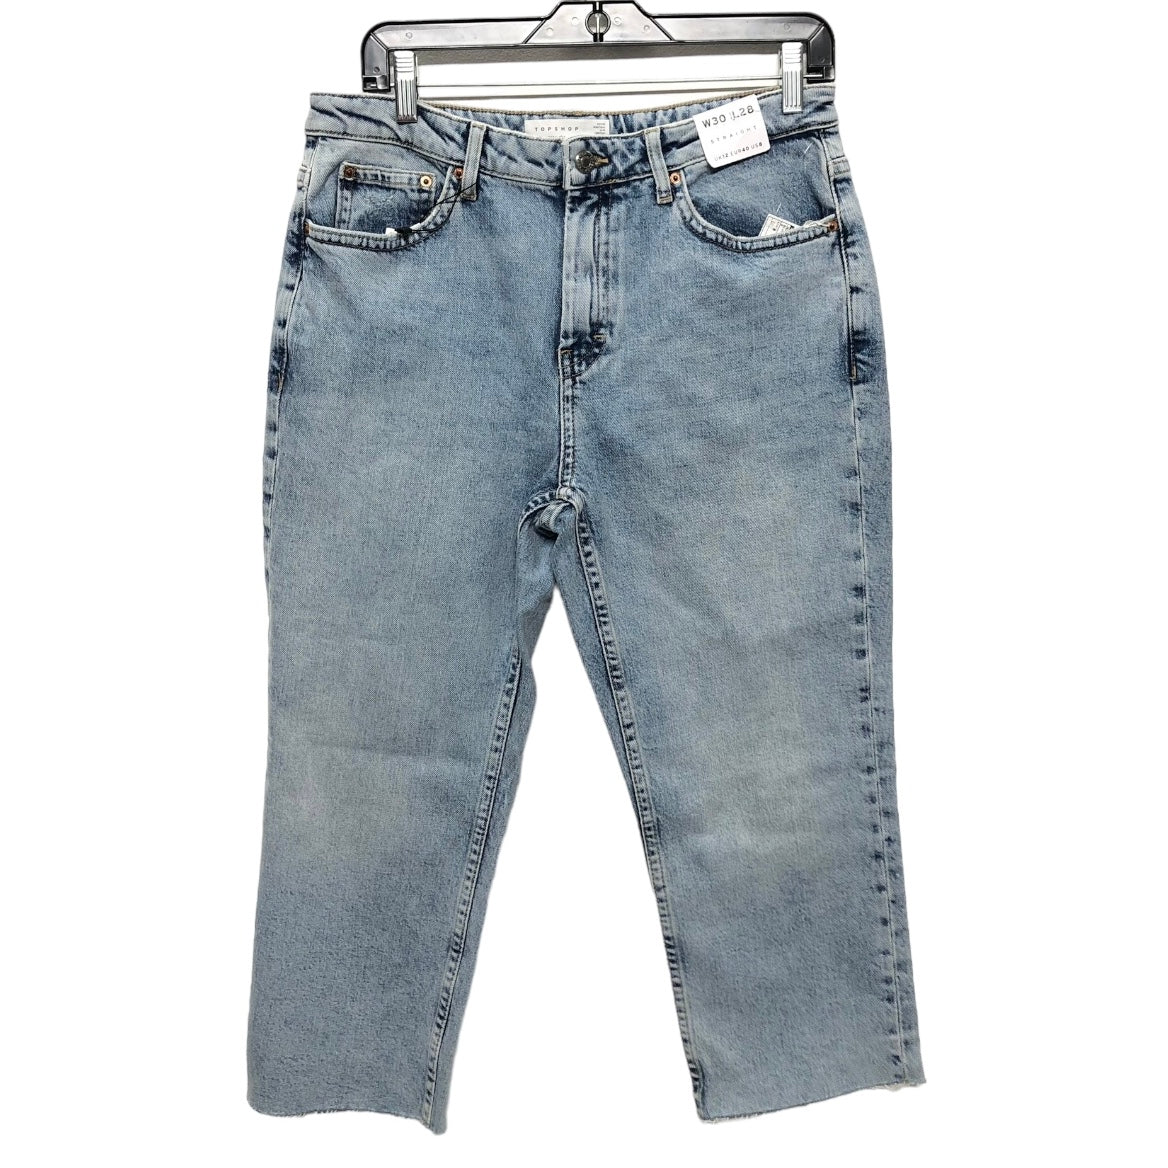 Blue Denim Jeans Straight Top Shop, Size 8